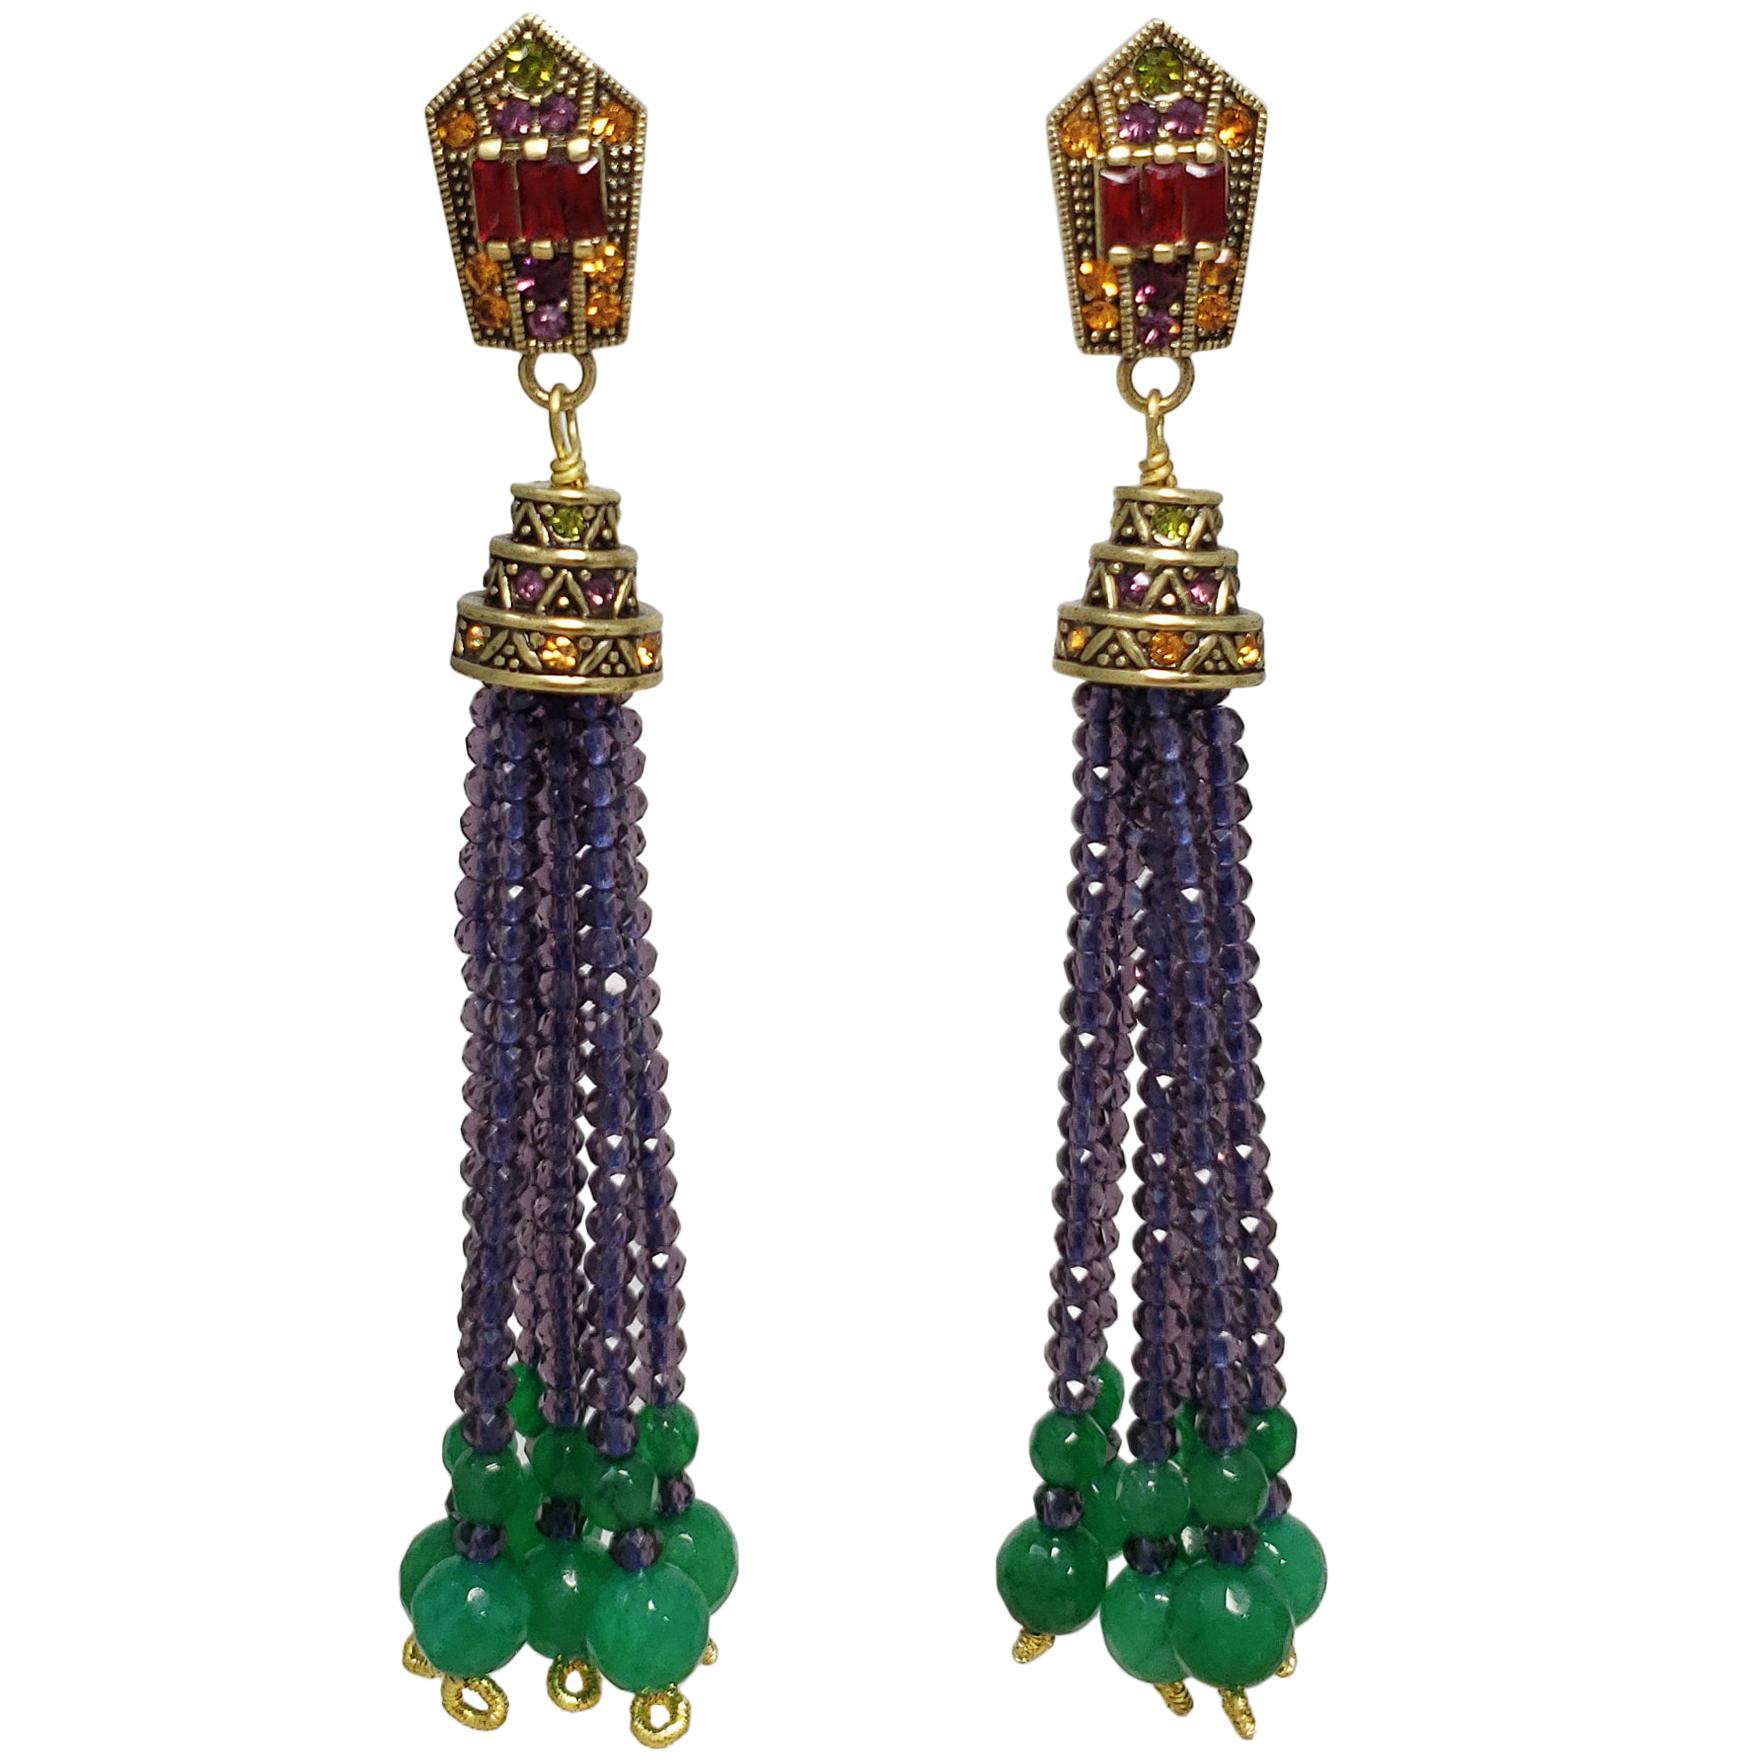 Heidi Daus "Windsor Tassels" Beaded Drop Earrings in Purple, Green, Crystals